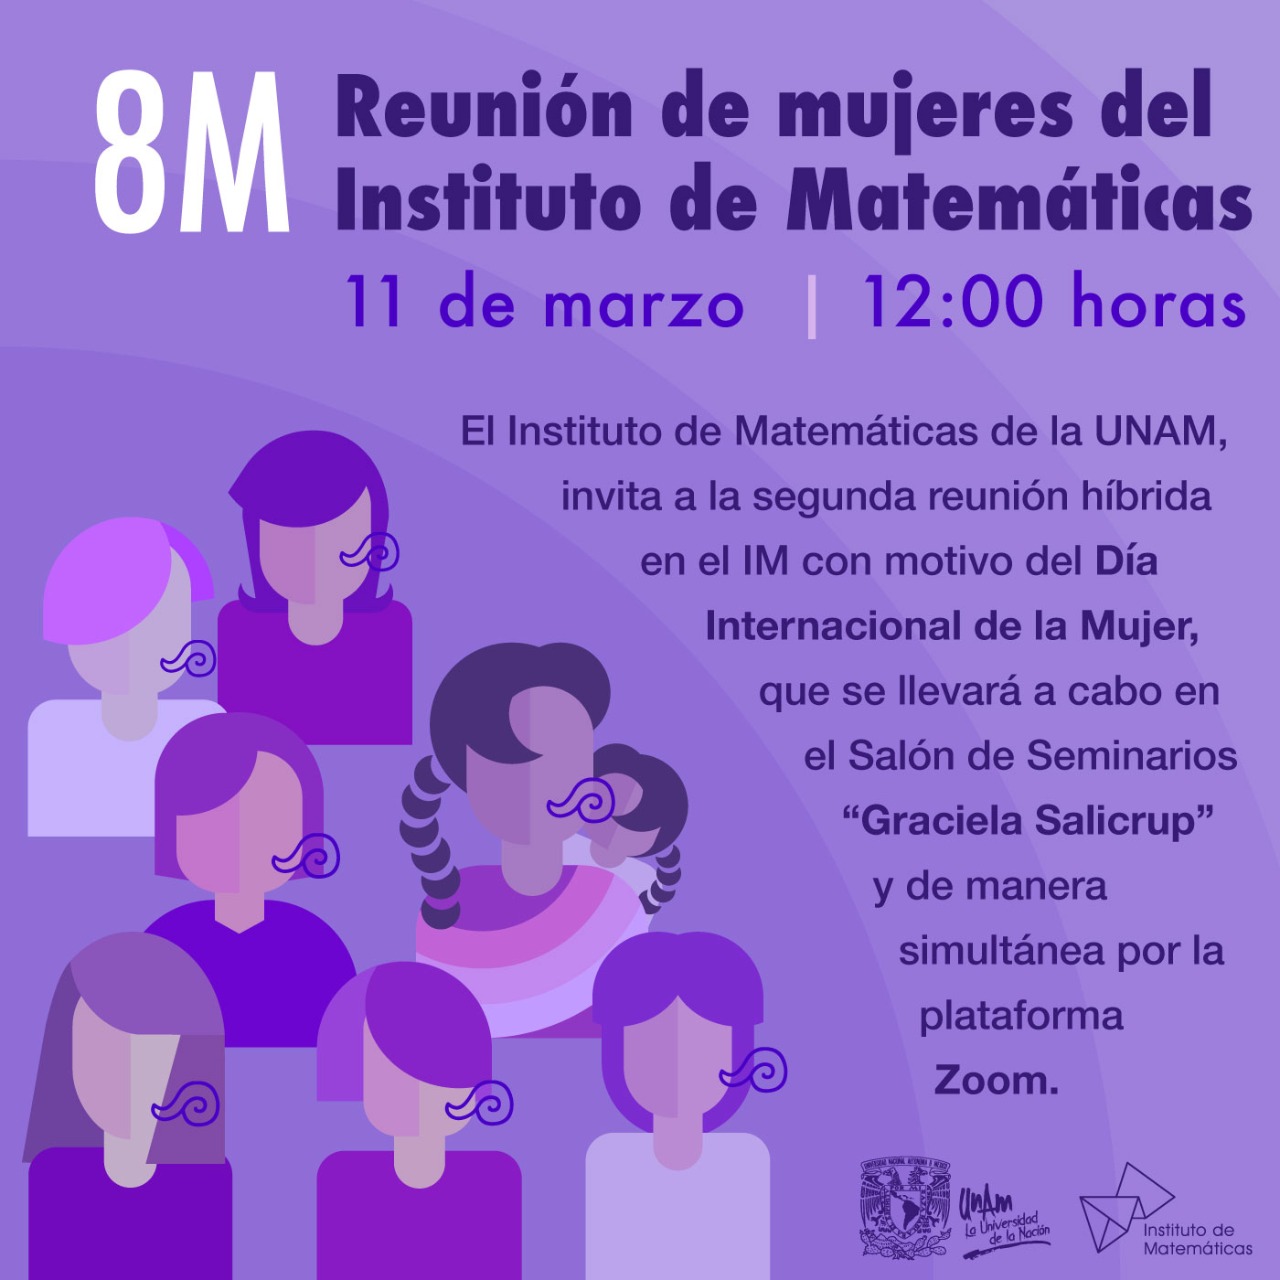 8M Reunión de mujeres del Instituto de Matemáticas 